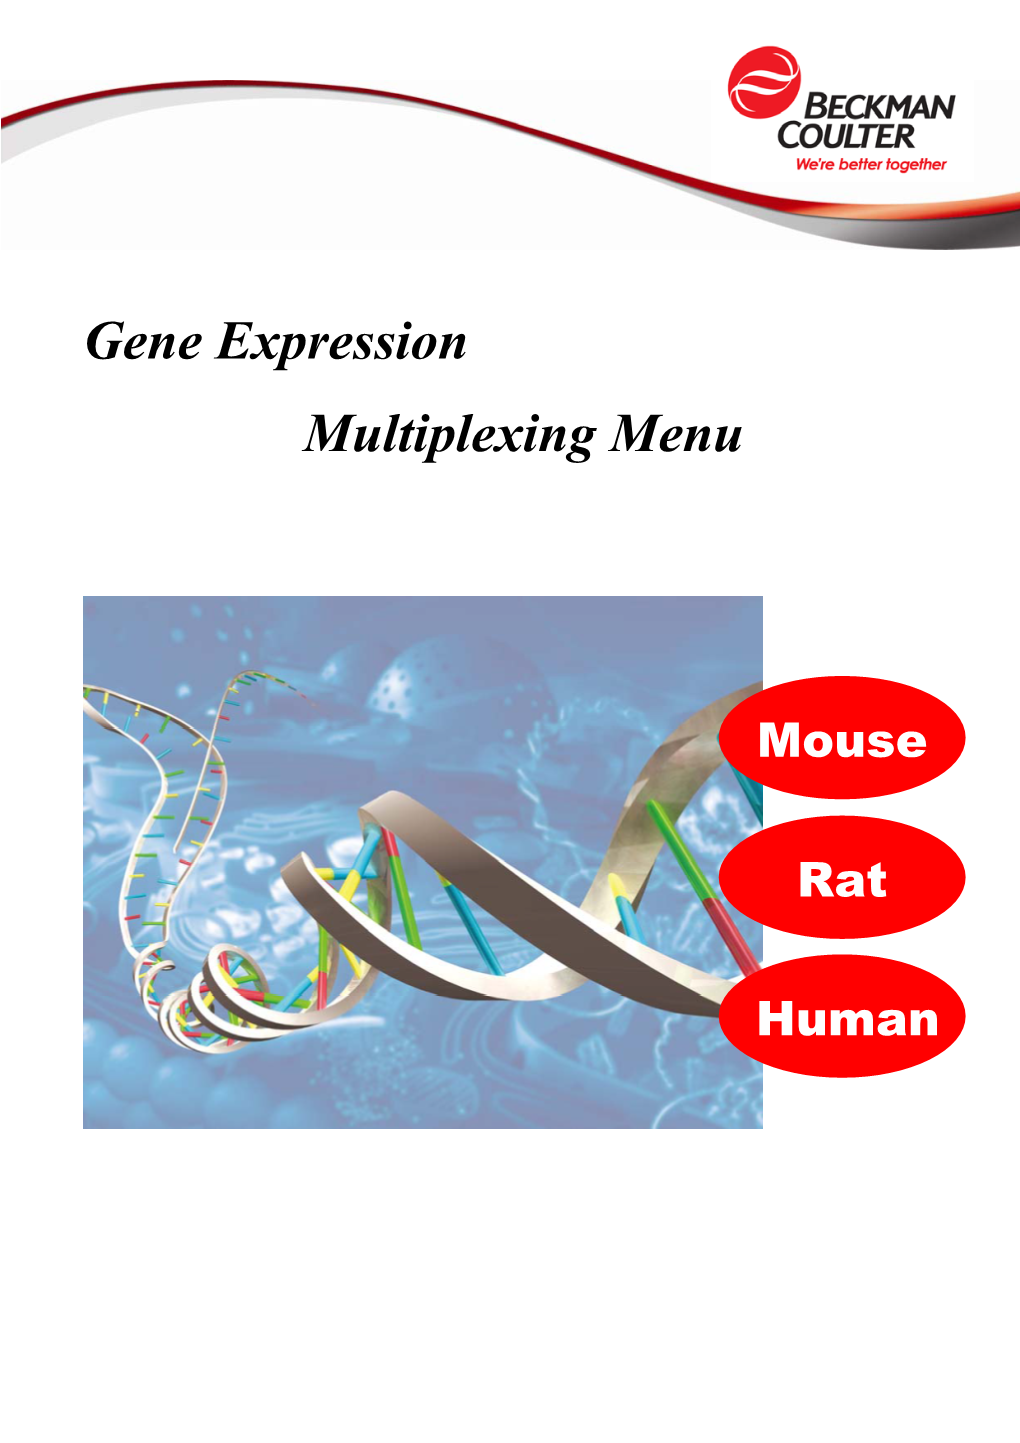 Gene Expression Multiplexing Menu